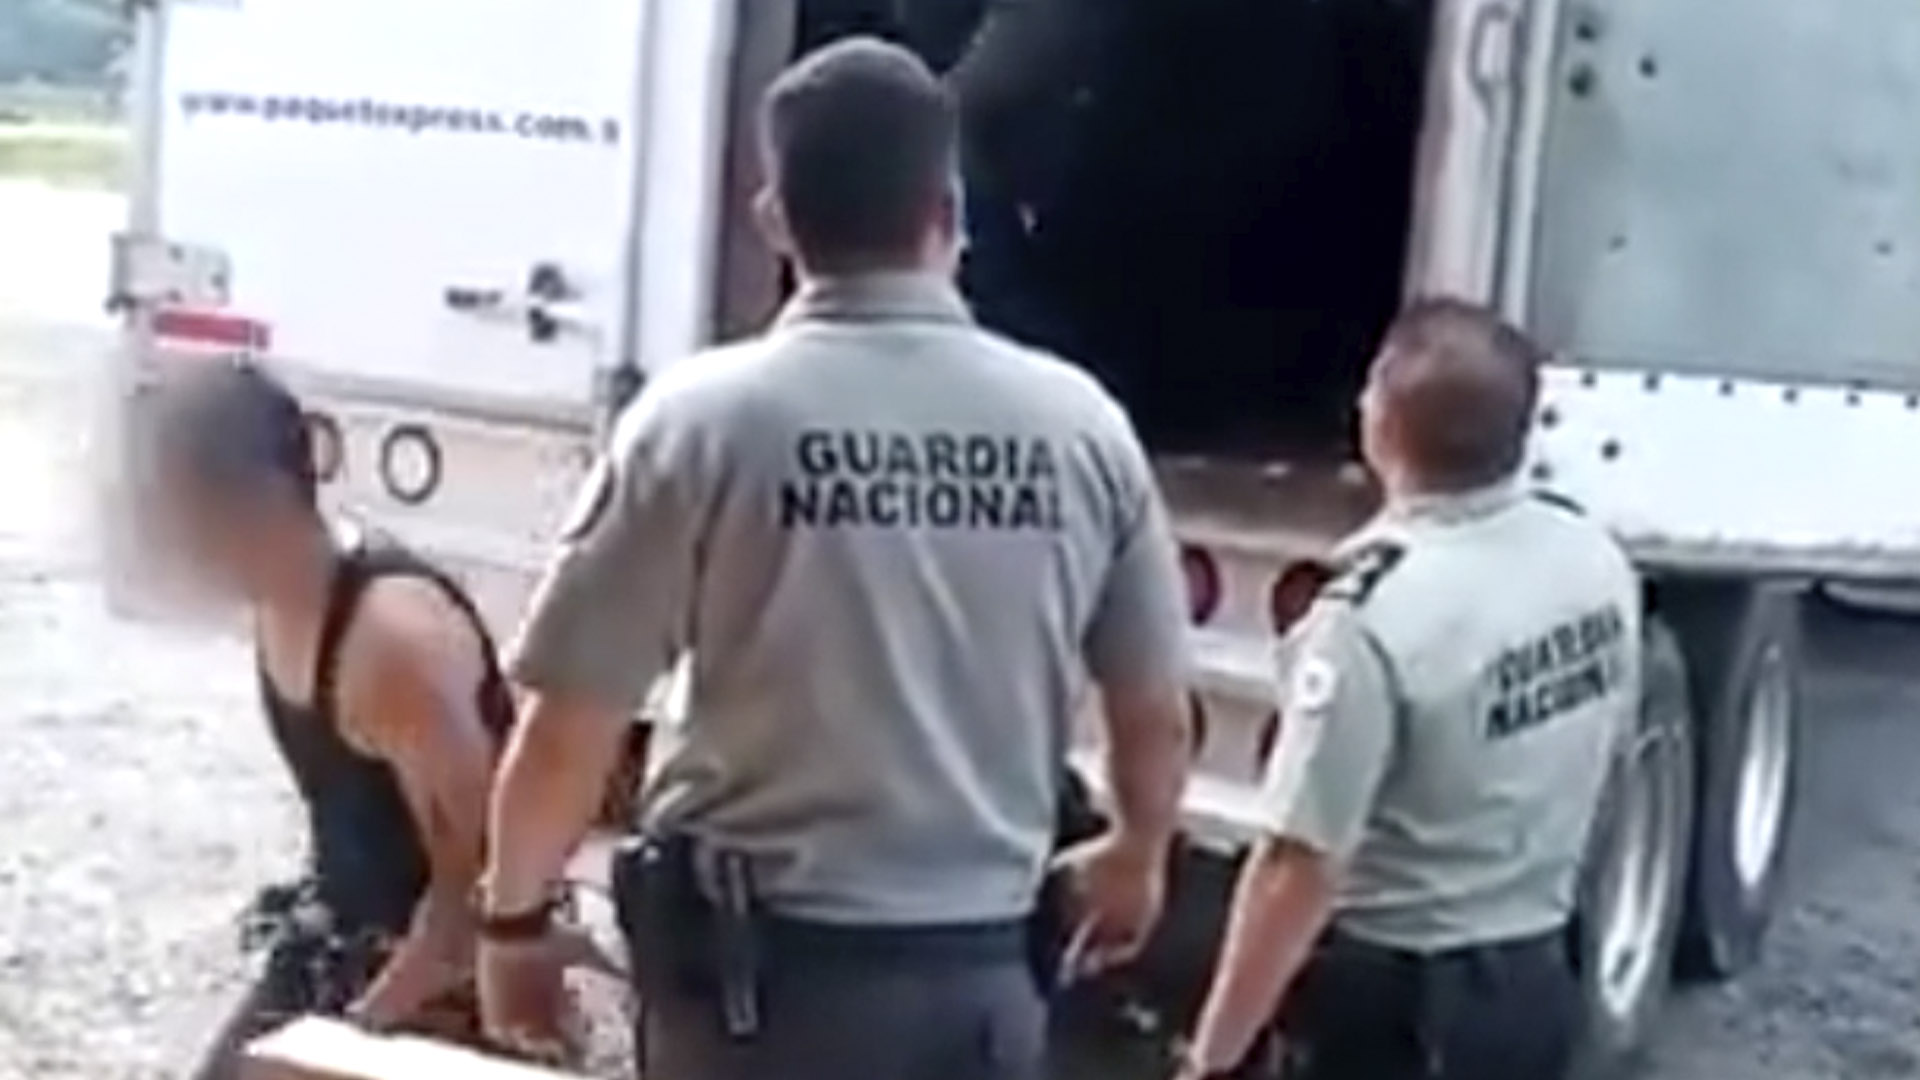 Guardia rescató a personas que viajaban a bordo un tráiler en Veracruz - Infobae